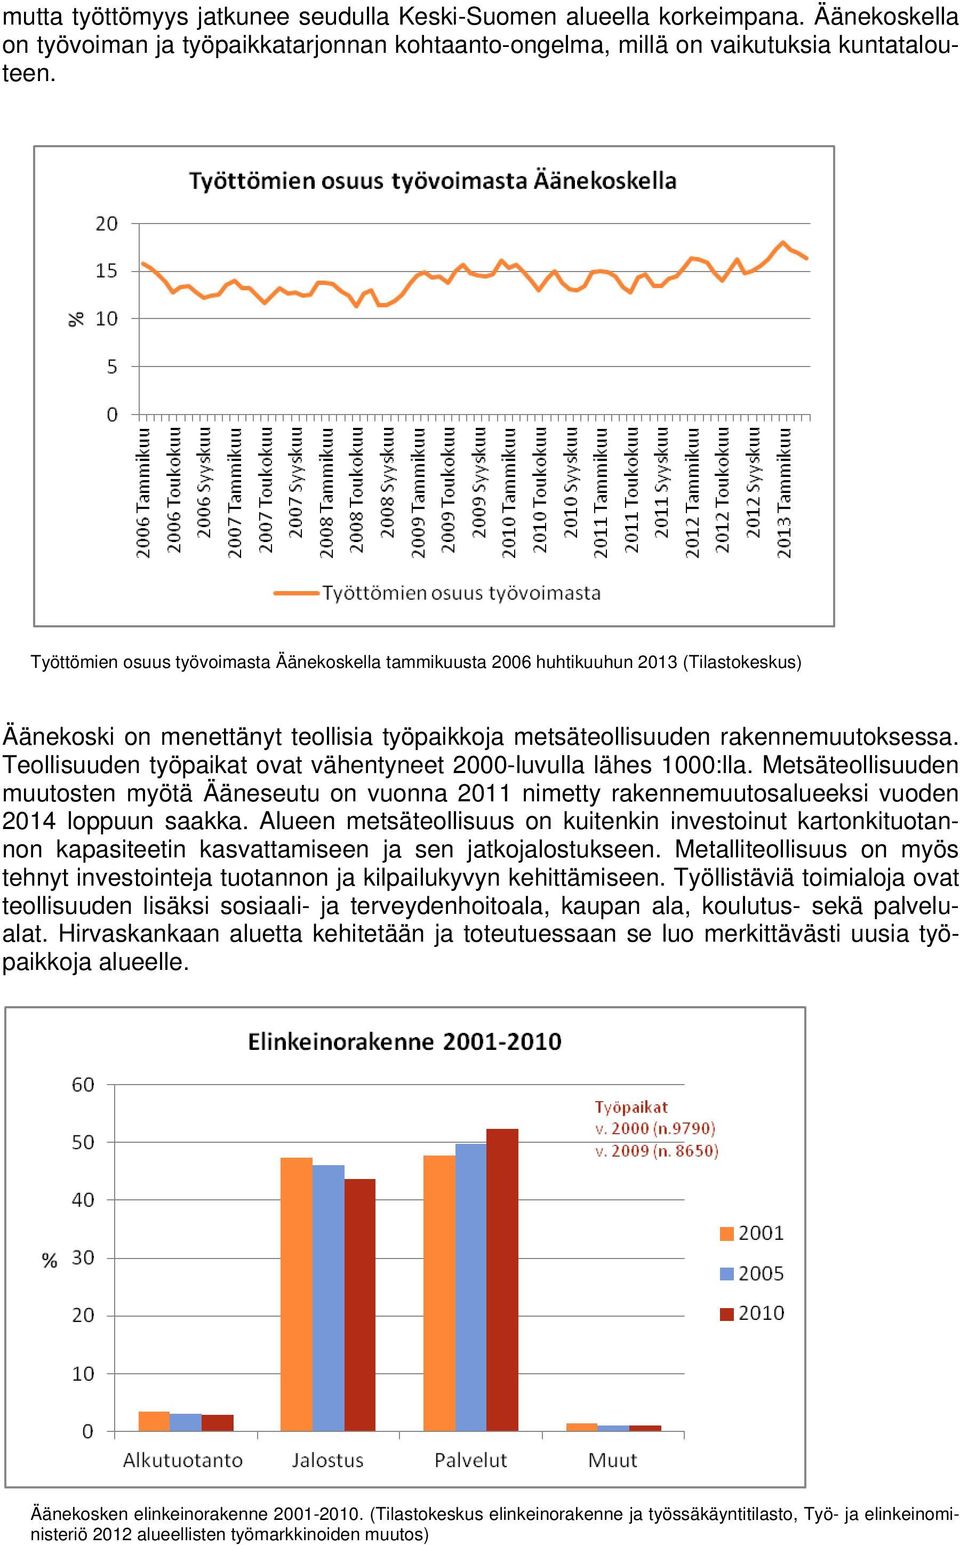 Teollisuuden työpaikat ovat vähentyneet 2000-luvulla lähes 1000:lla. Metsäteollisuuden muutosten myötä Ääneseutu on vuonna 2011 nimetty rakennemuutosalueeksi vuoden 2014 loppuun saakka.